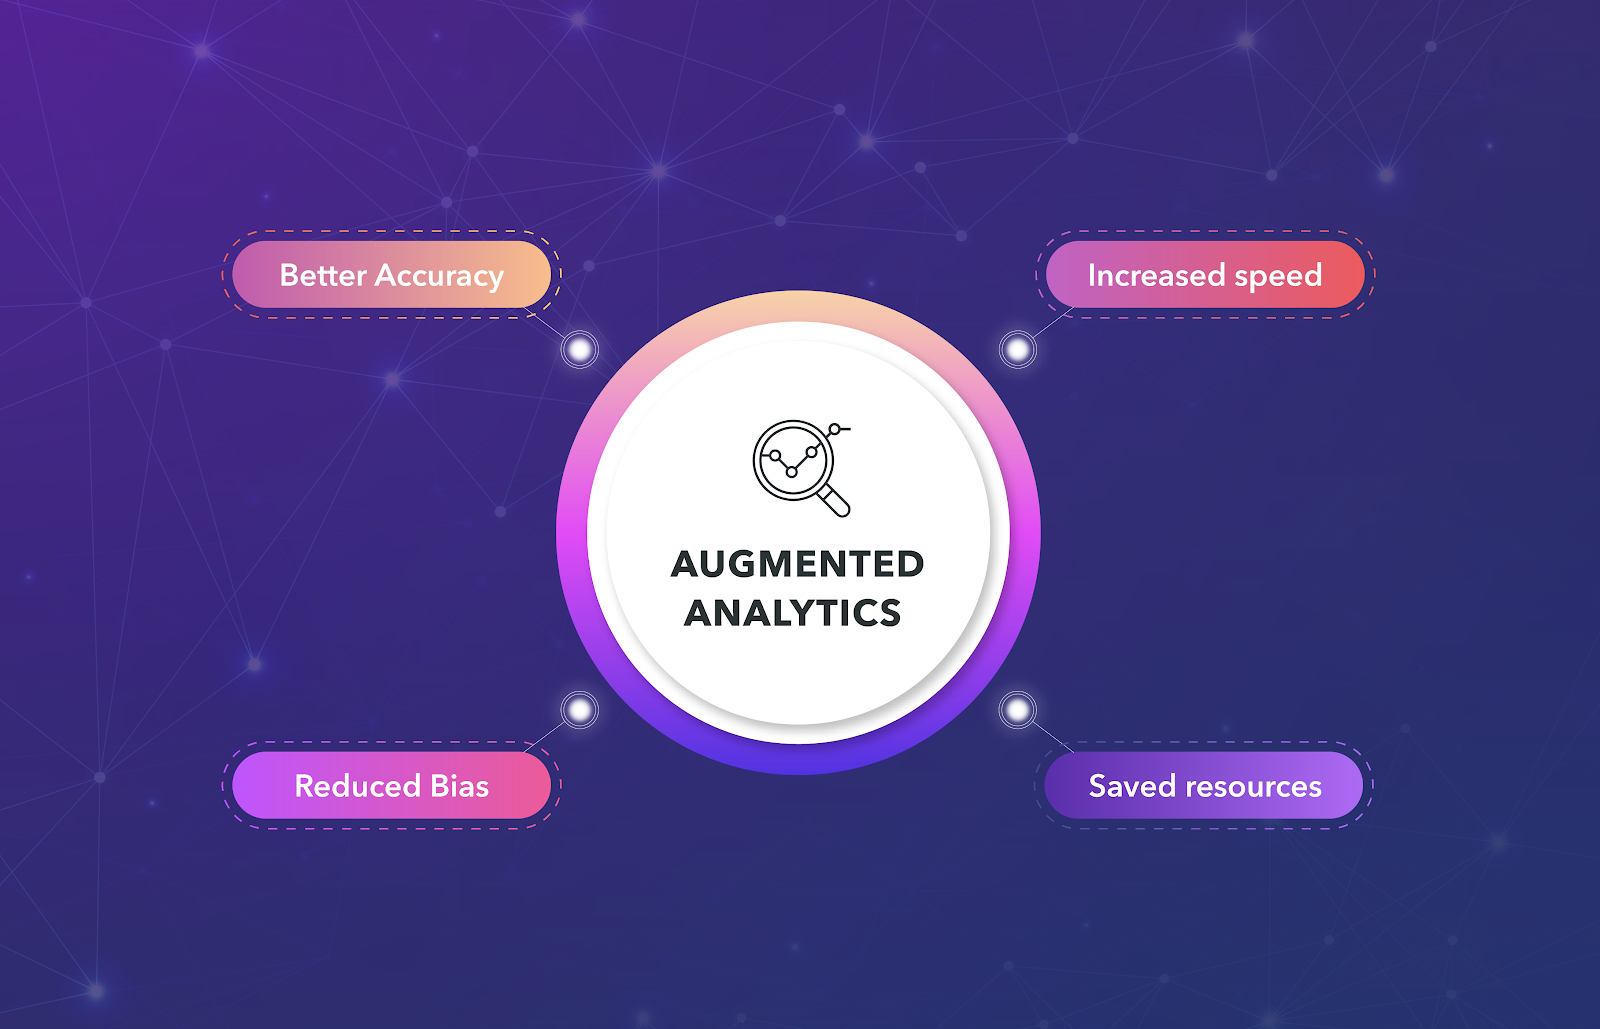 Benefits of using Augmented Analytics